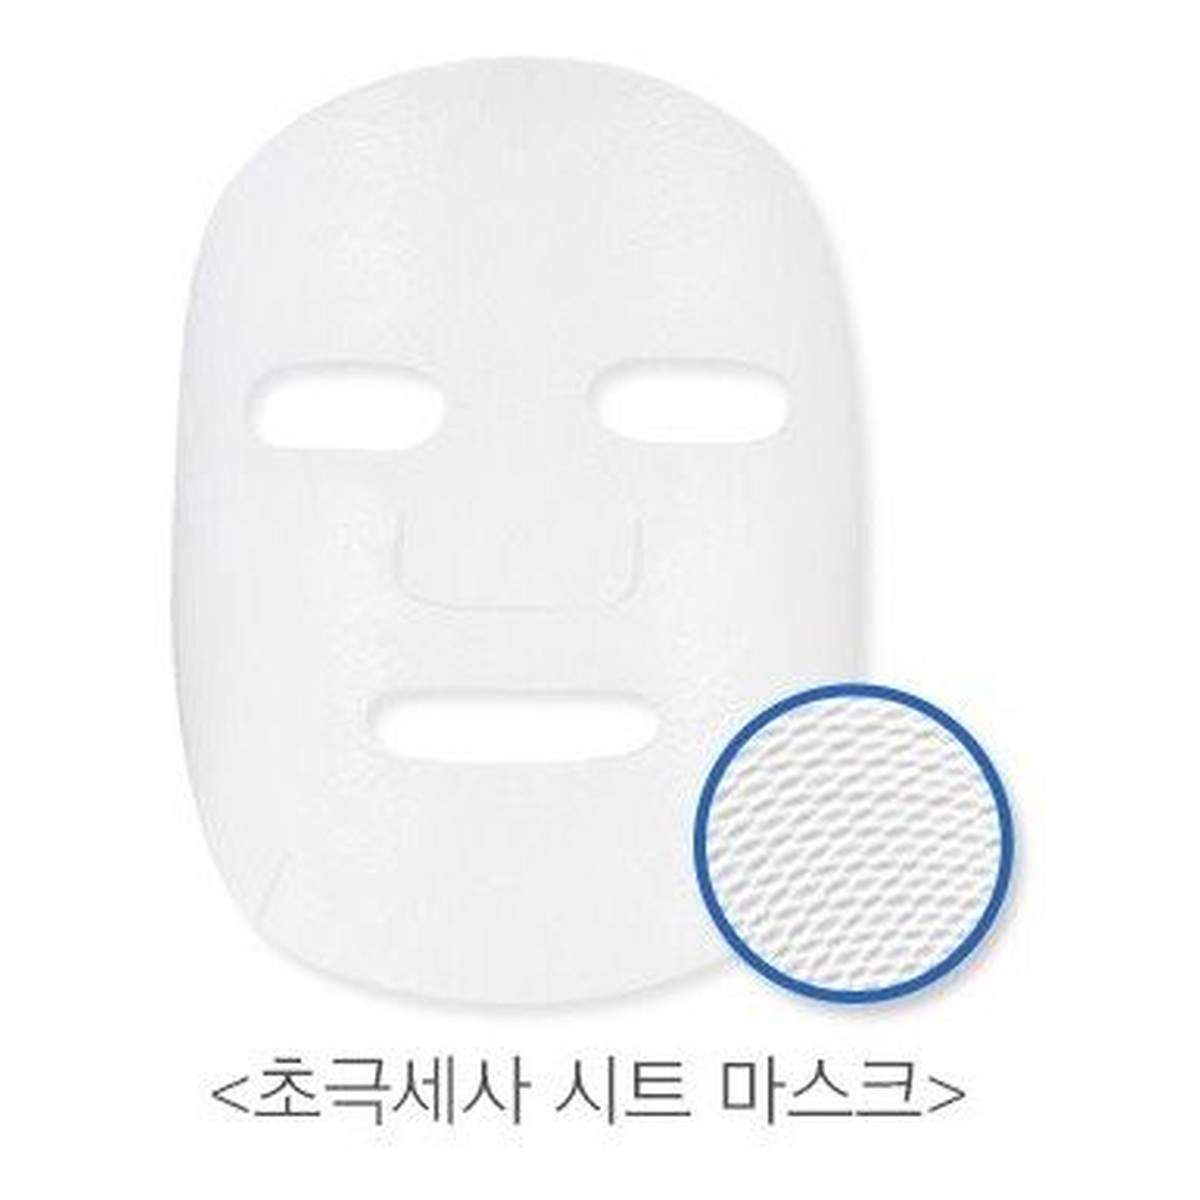 Missha Cream Soak Mask Nourishing Odżywcza Maseczka W Płachcie 23g